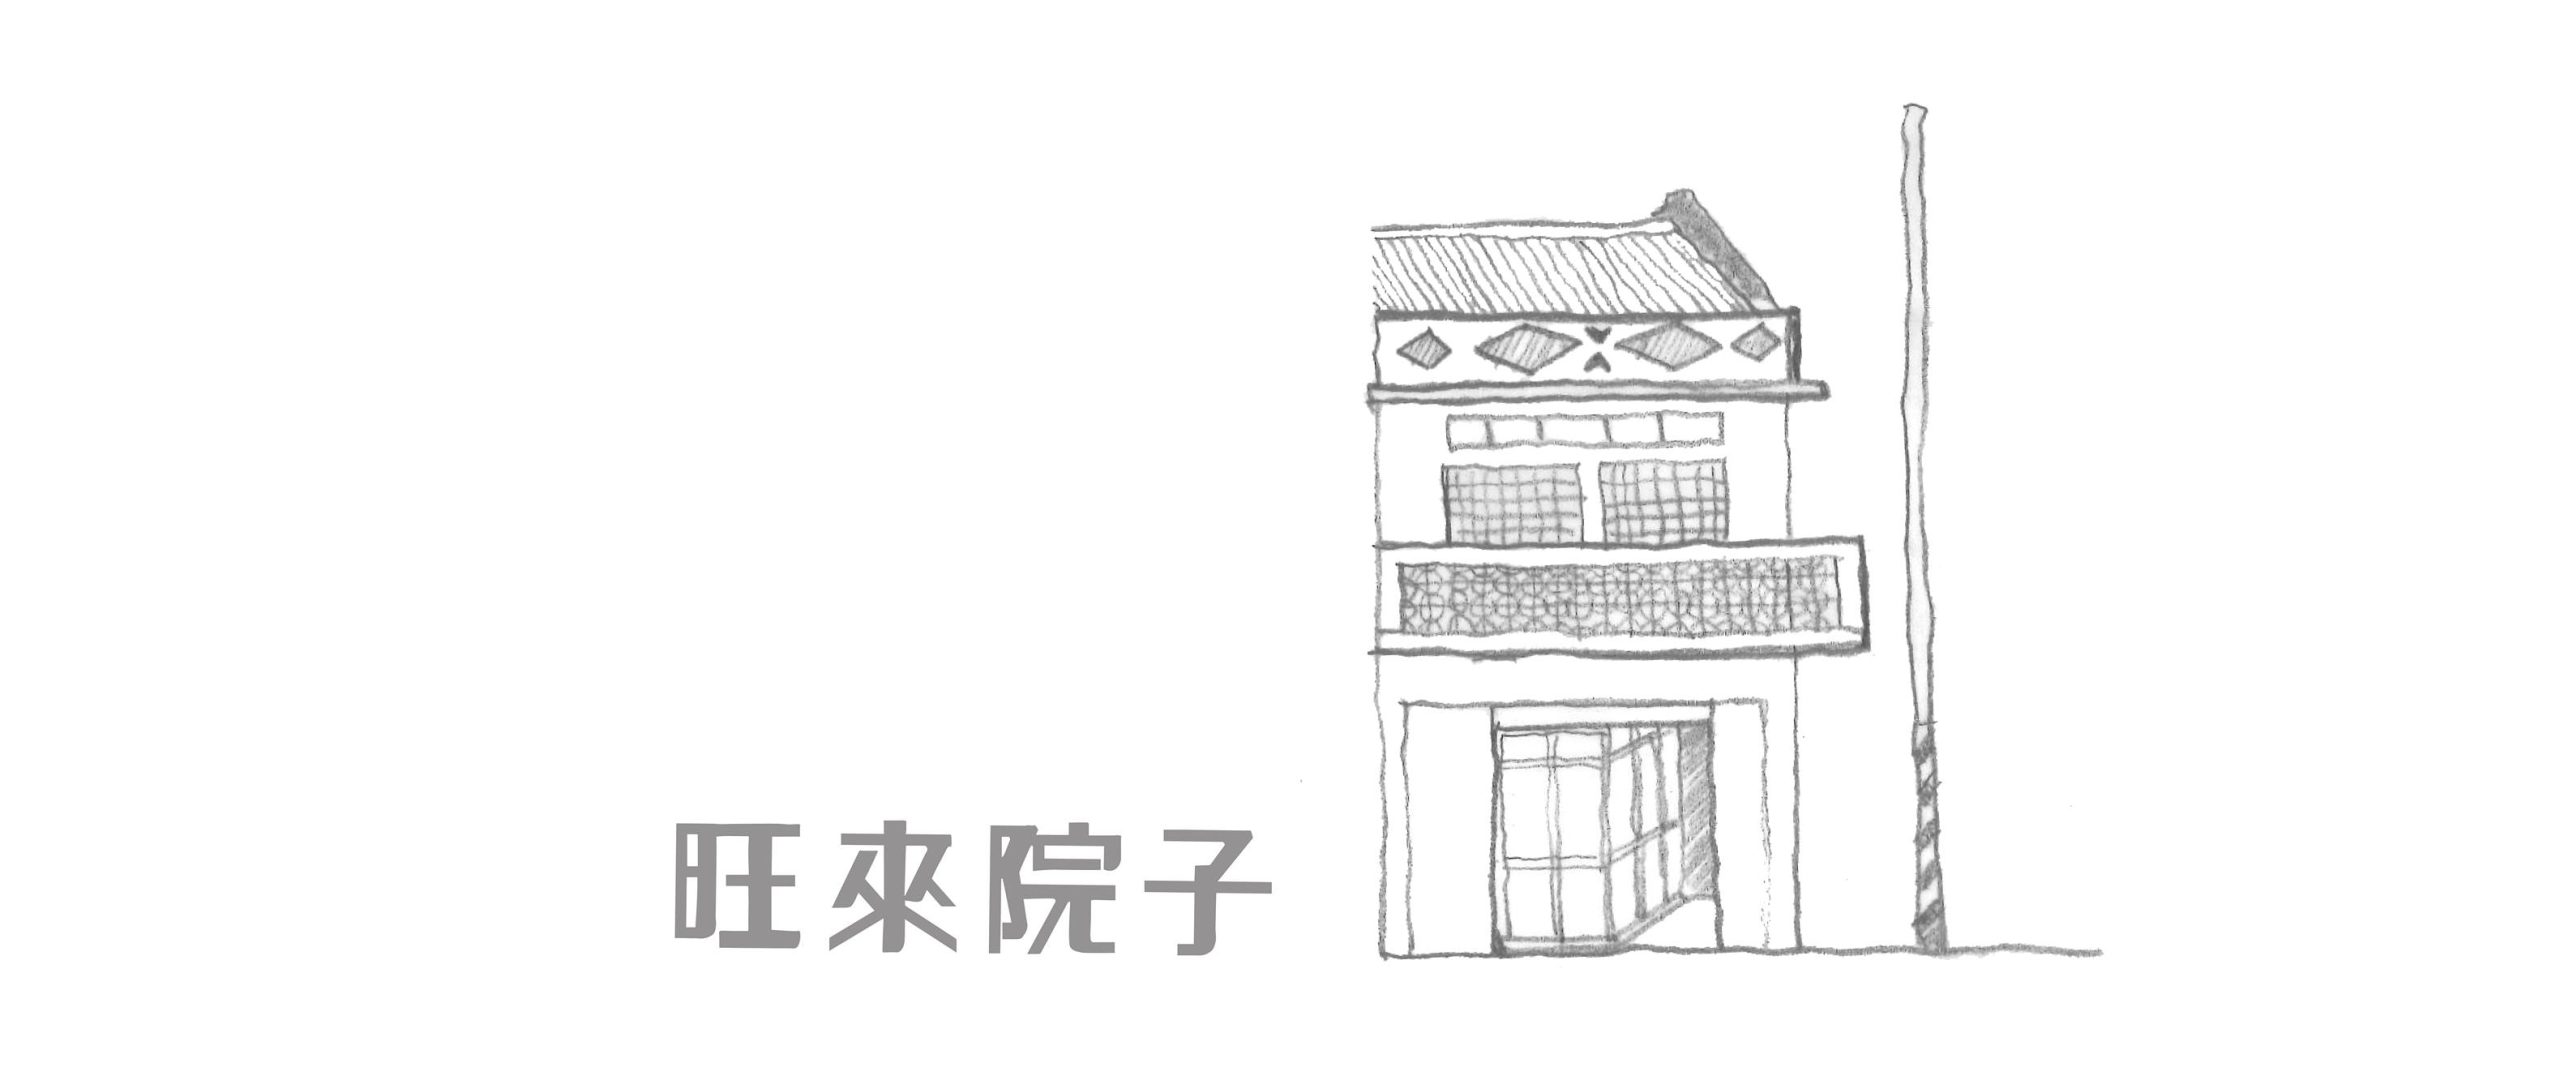 紀錄片《怪獸老屋》台灣建築人的在地生活哲學/美學闡述